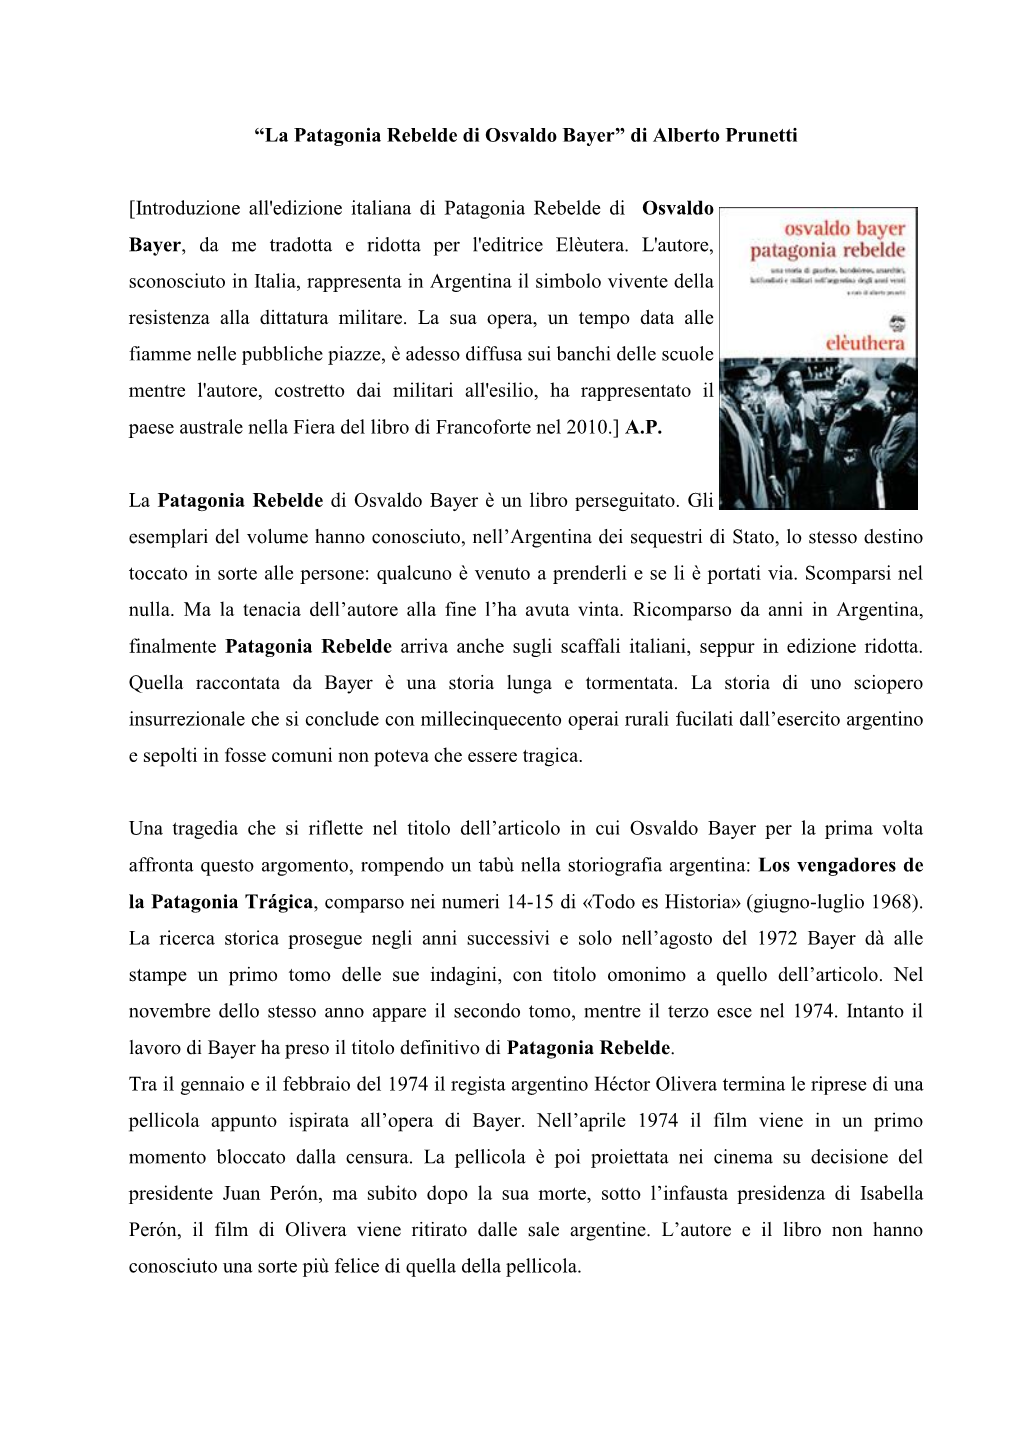 Patagonia Rebelde Di Osvaldo Bayer” Di Alberto Prunetti